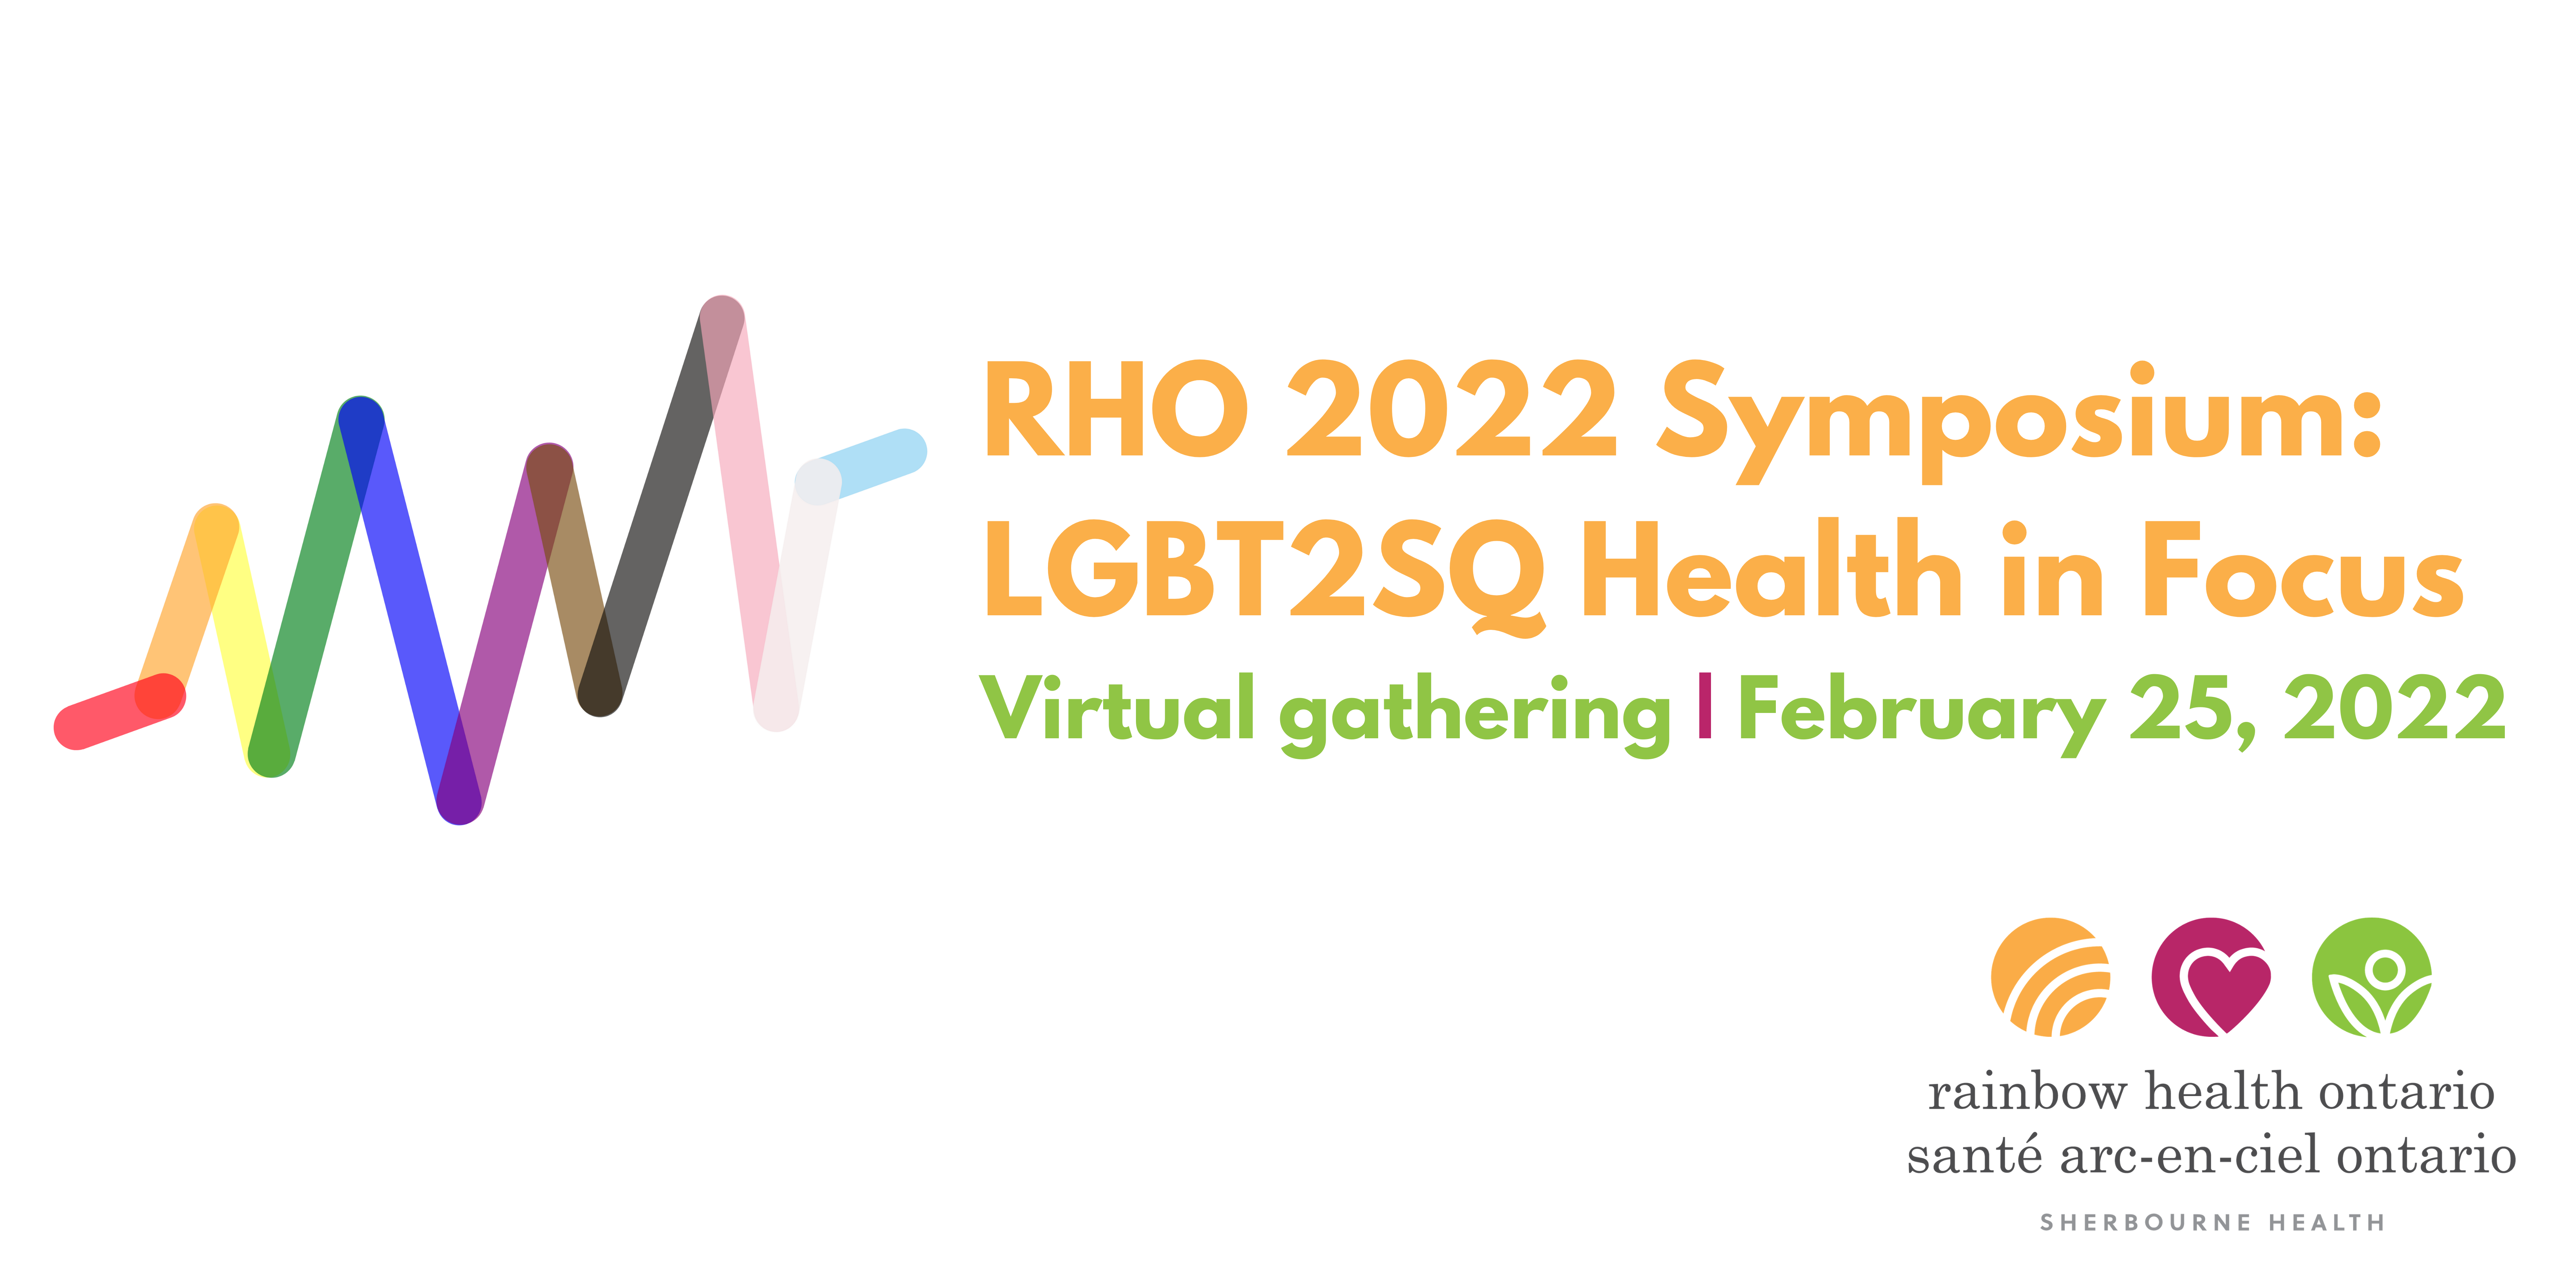 RHO 2022 Symposium: LGBT2SQ Health in Focus - Virtual Gathering - February 25, 2022